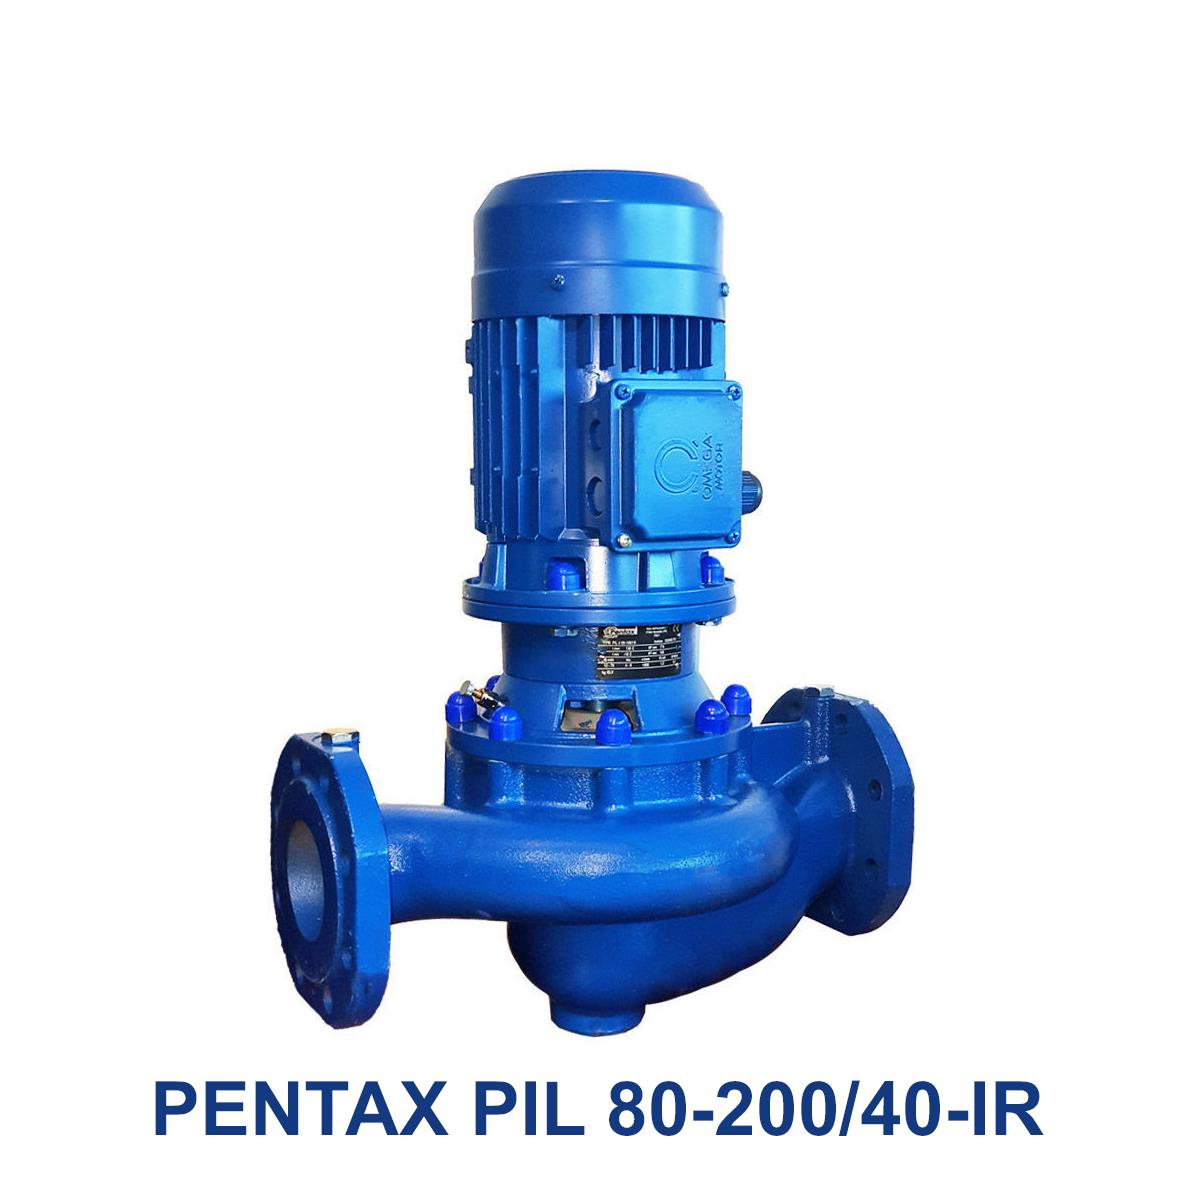 PENTAX-PIL-80-200-40-IR